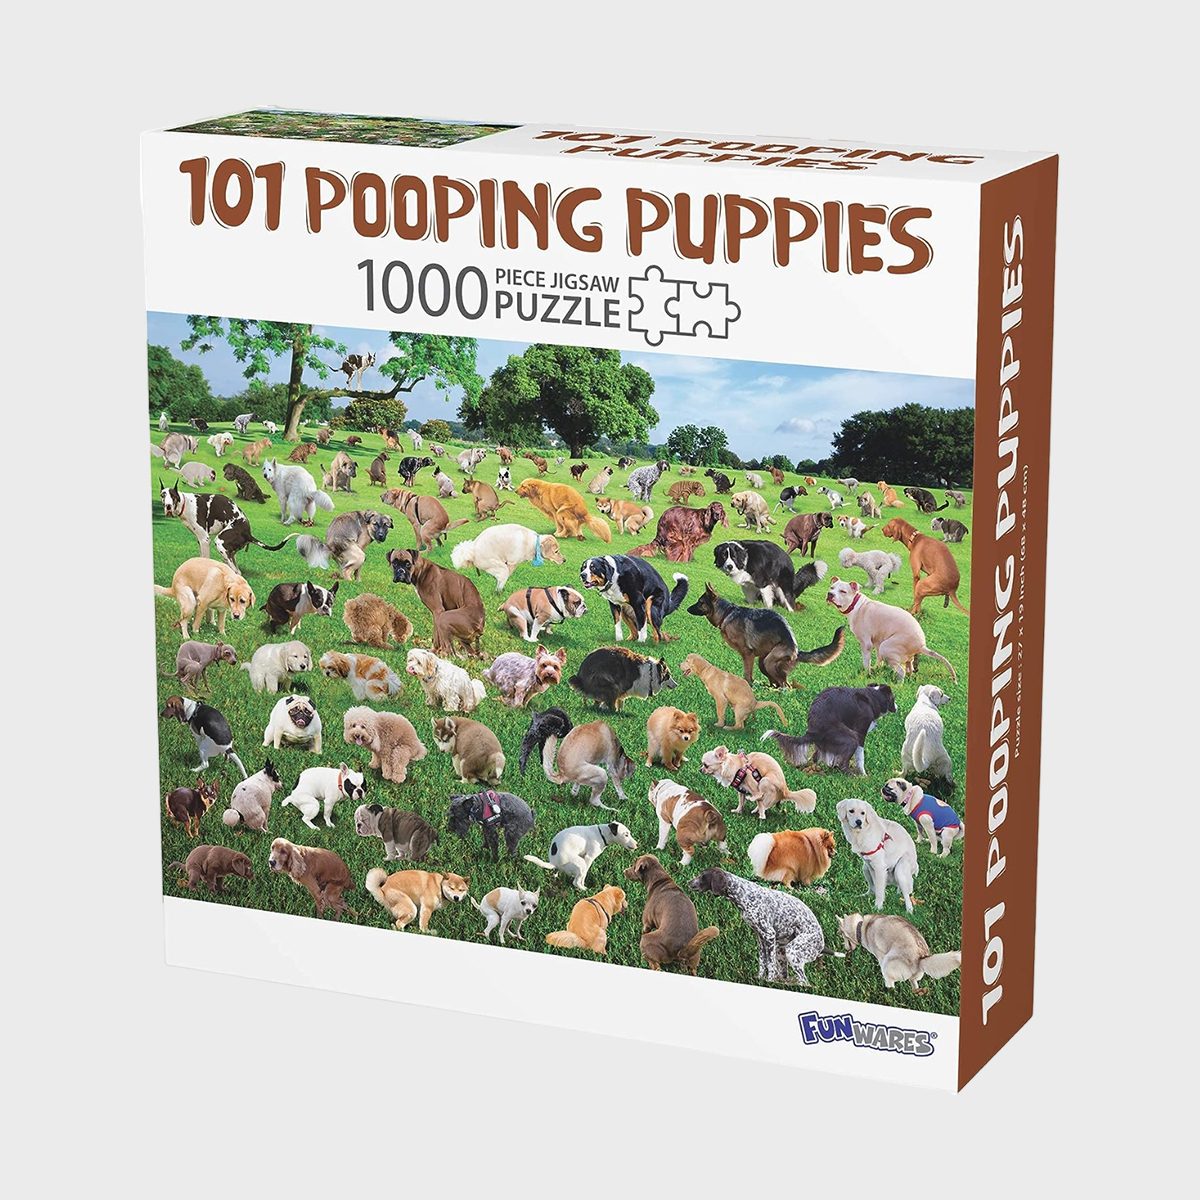 101 Pooping Puppies Puzzle Ecomm Via Amazon.com